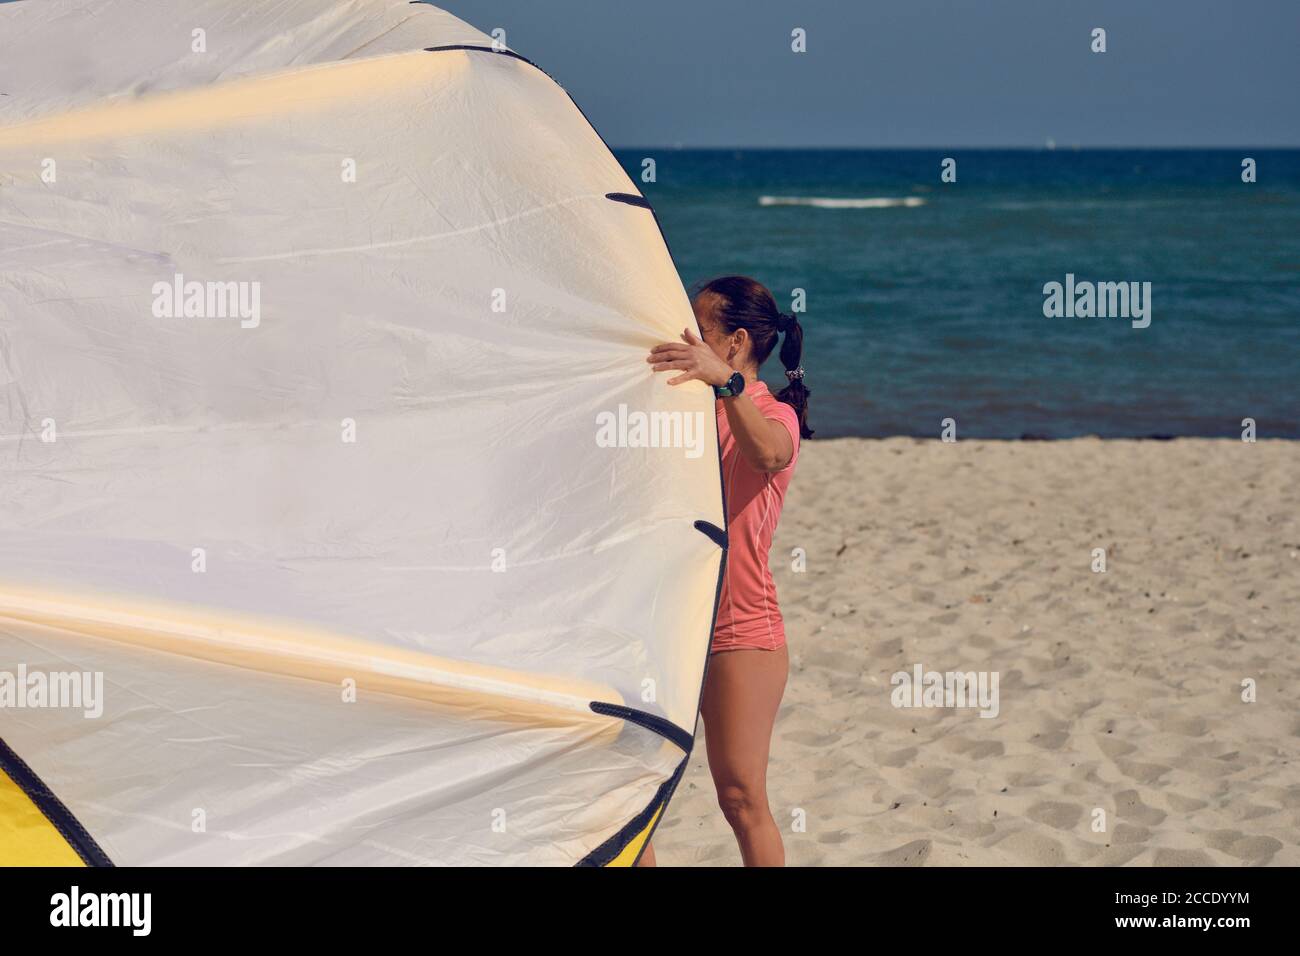 Junge Frau am Meer mit großen bunten Drachen oder Kitesurfen Segeln steht auf einem sandigen Sommerstrand in Ihr Schwimmkostüm Stockfoto